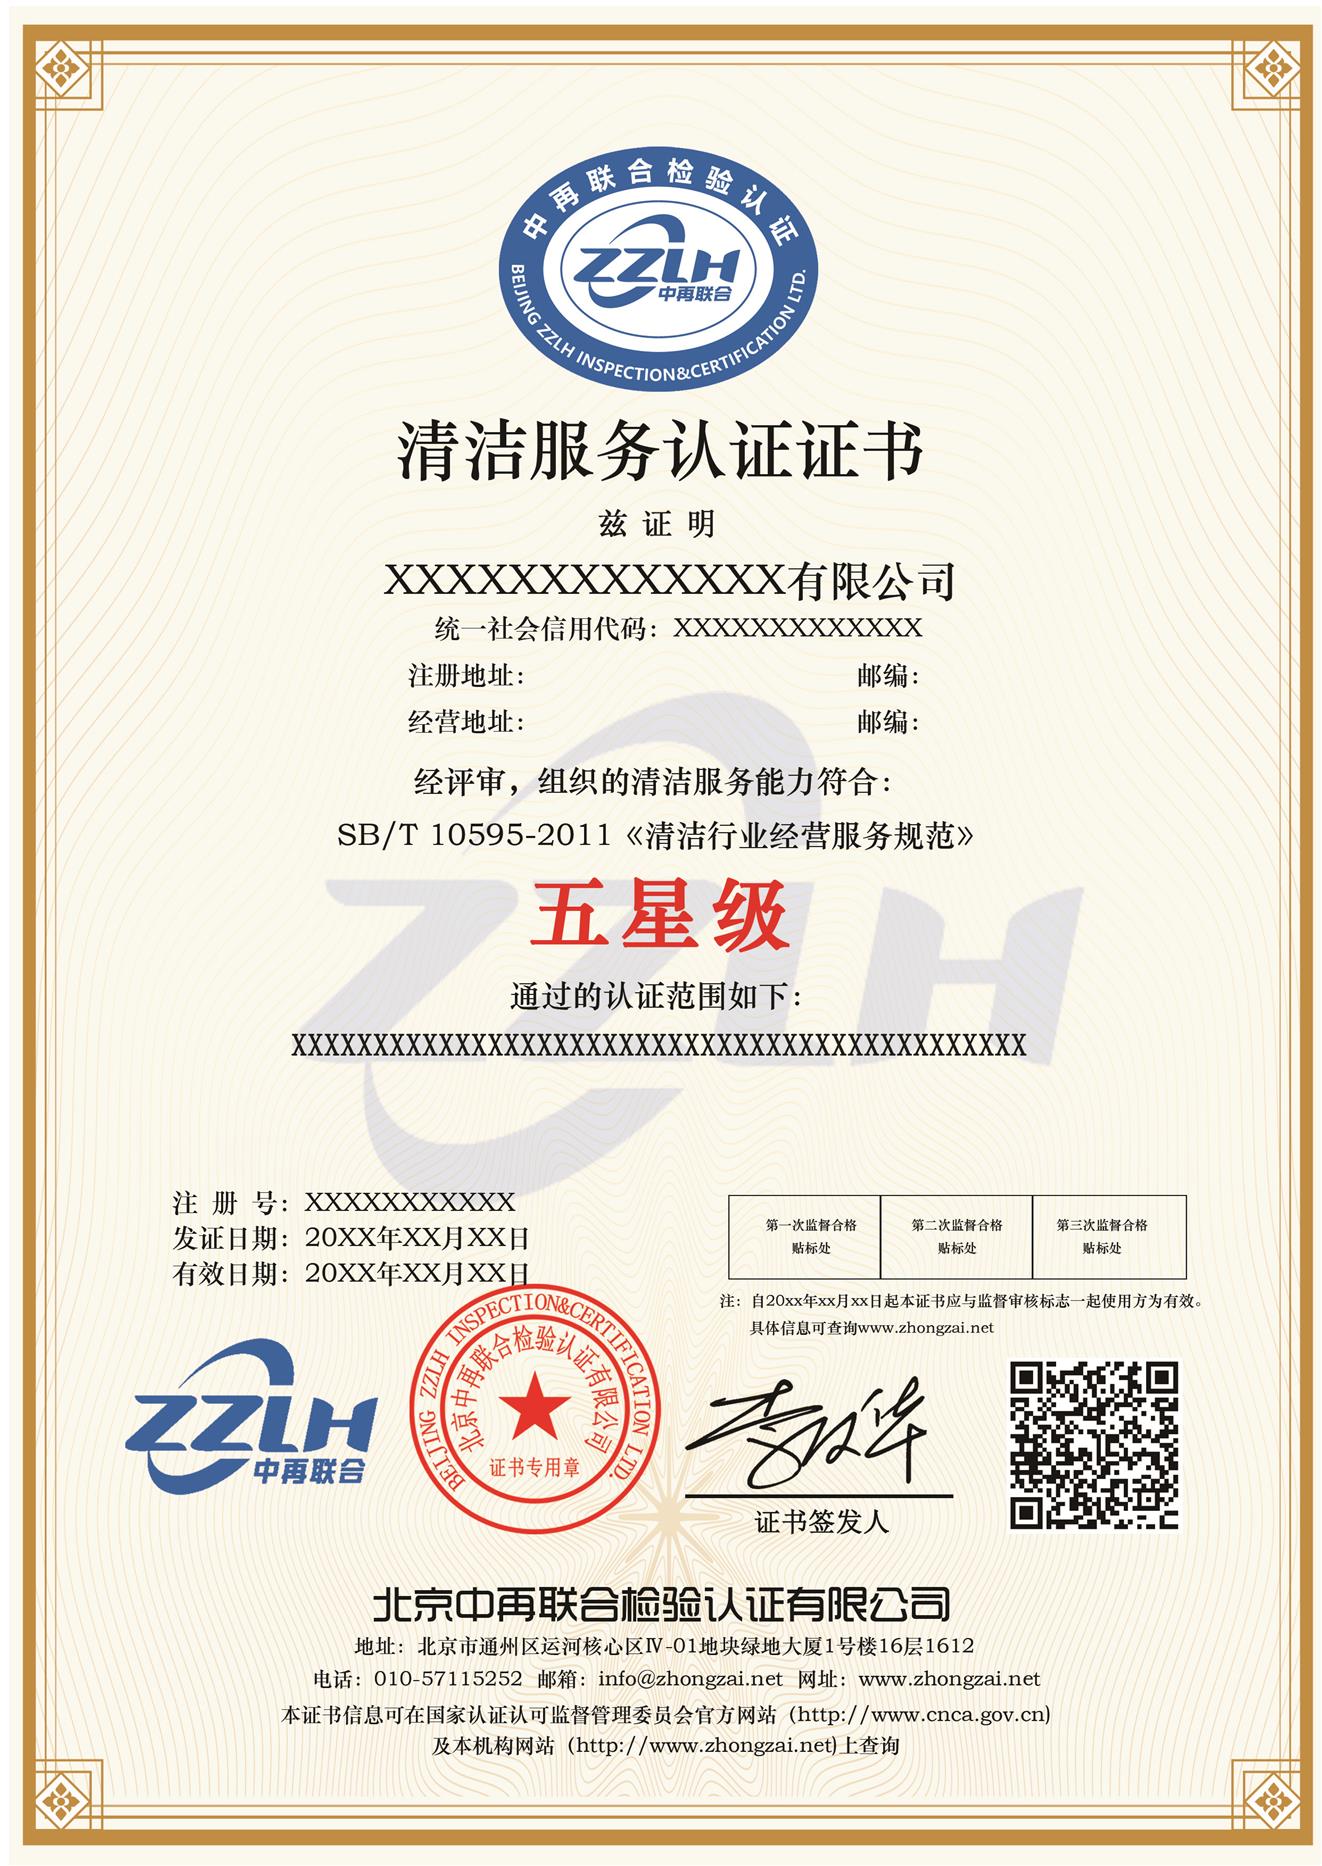 清洁服务认证的评审程序 荆州清洁服务认证机构 清洁卫生服务等级认证